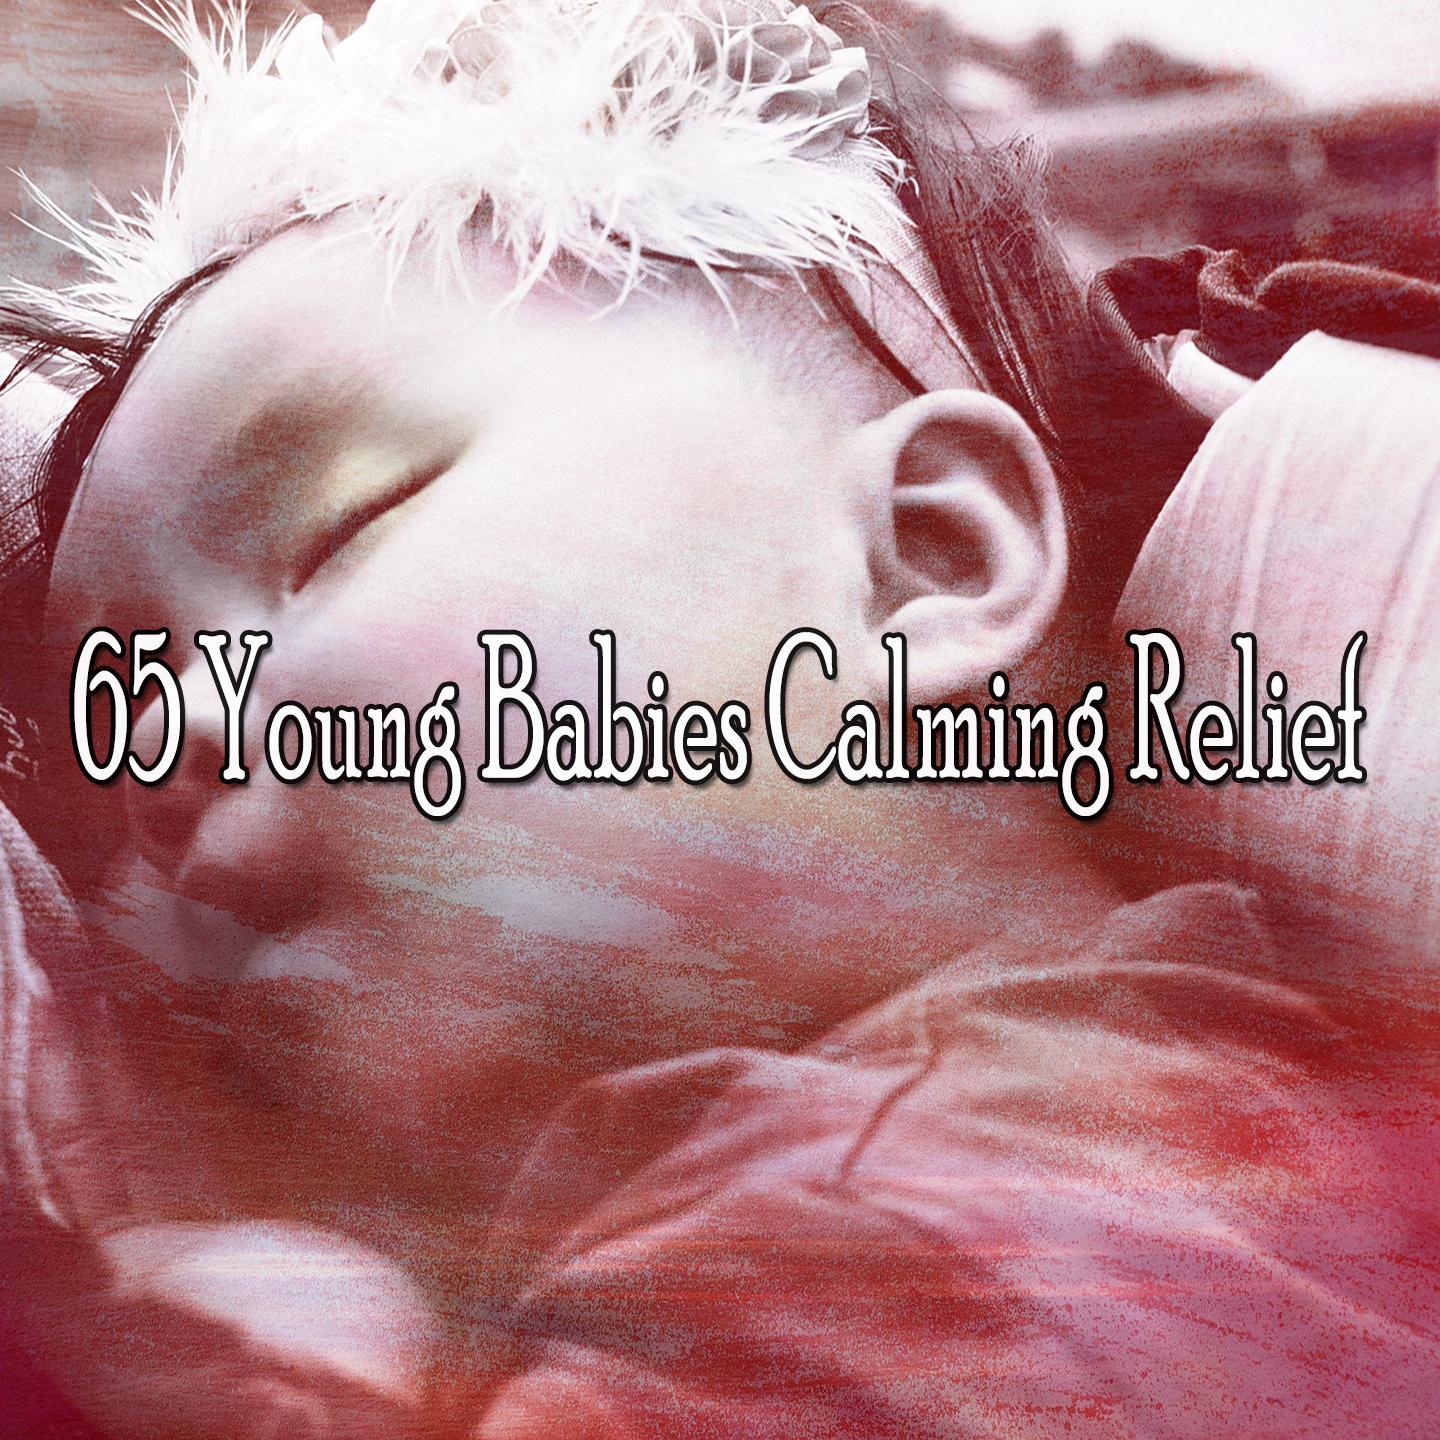 65 Young Babies Calming Relief